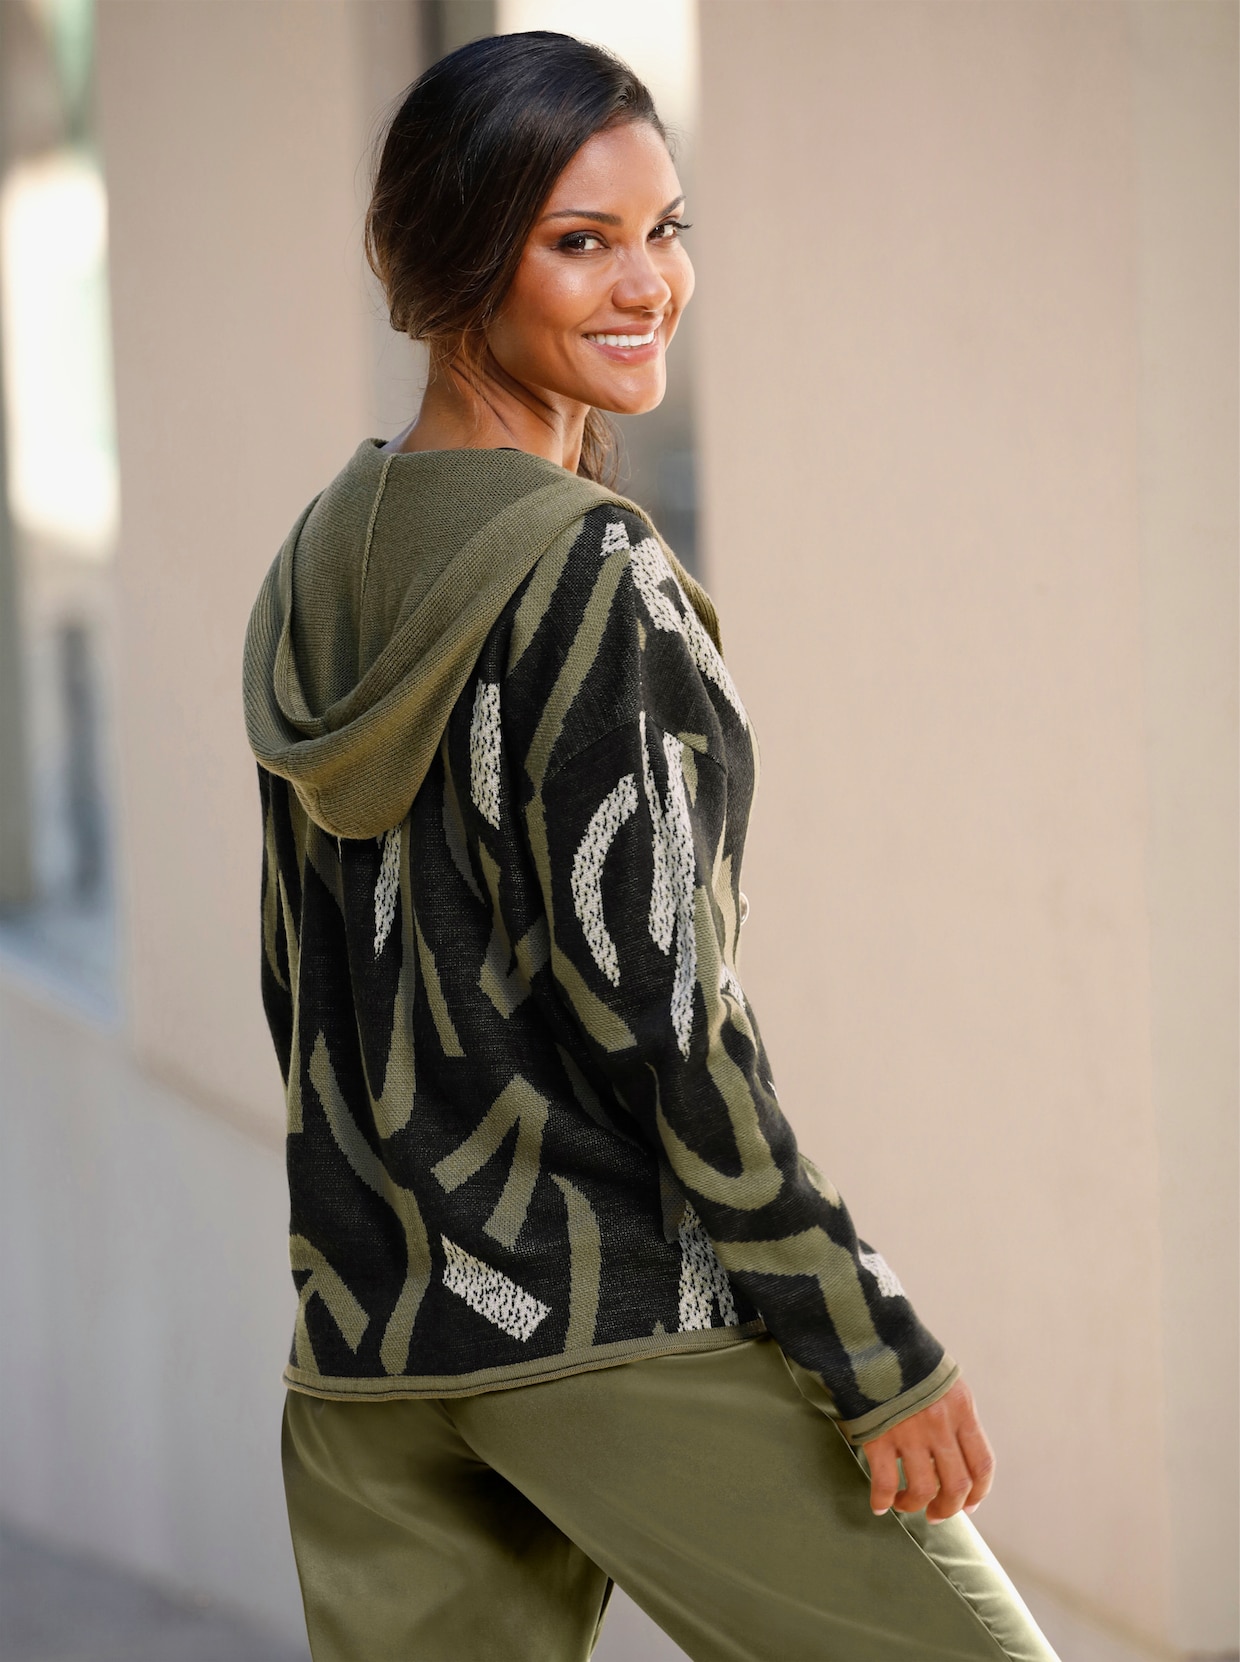 Pletený sveter s kapucňou - Čierno-olivový vzor